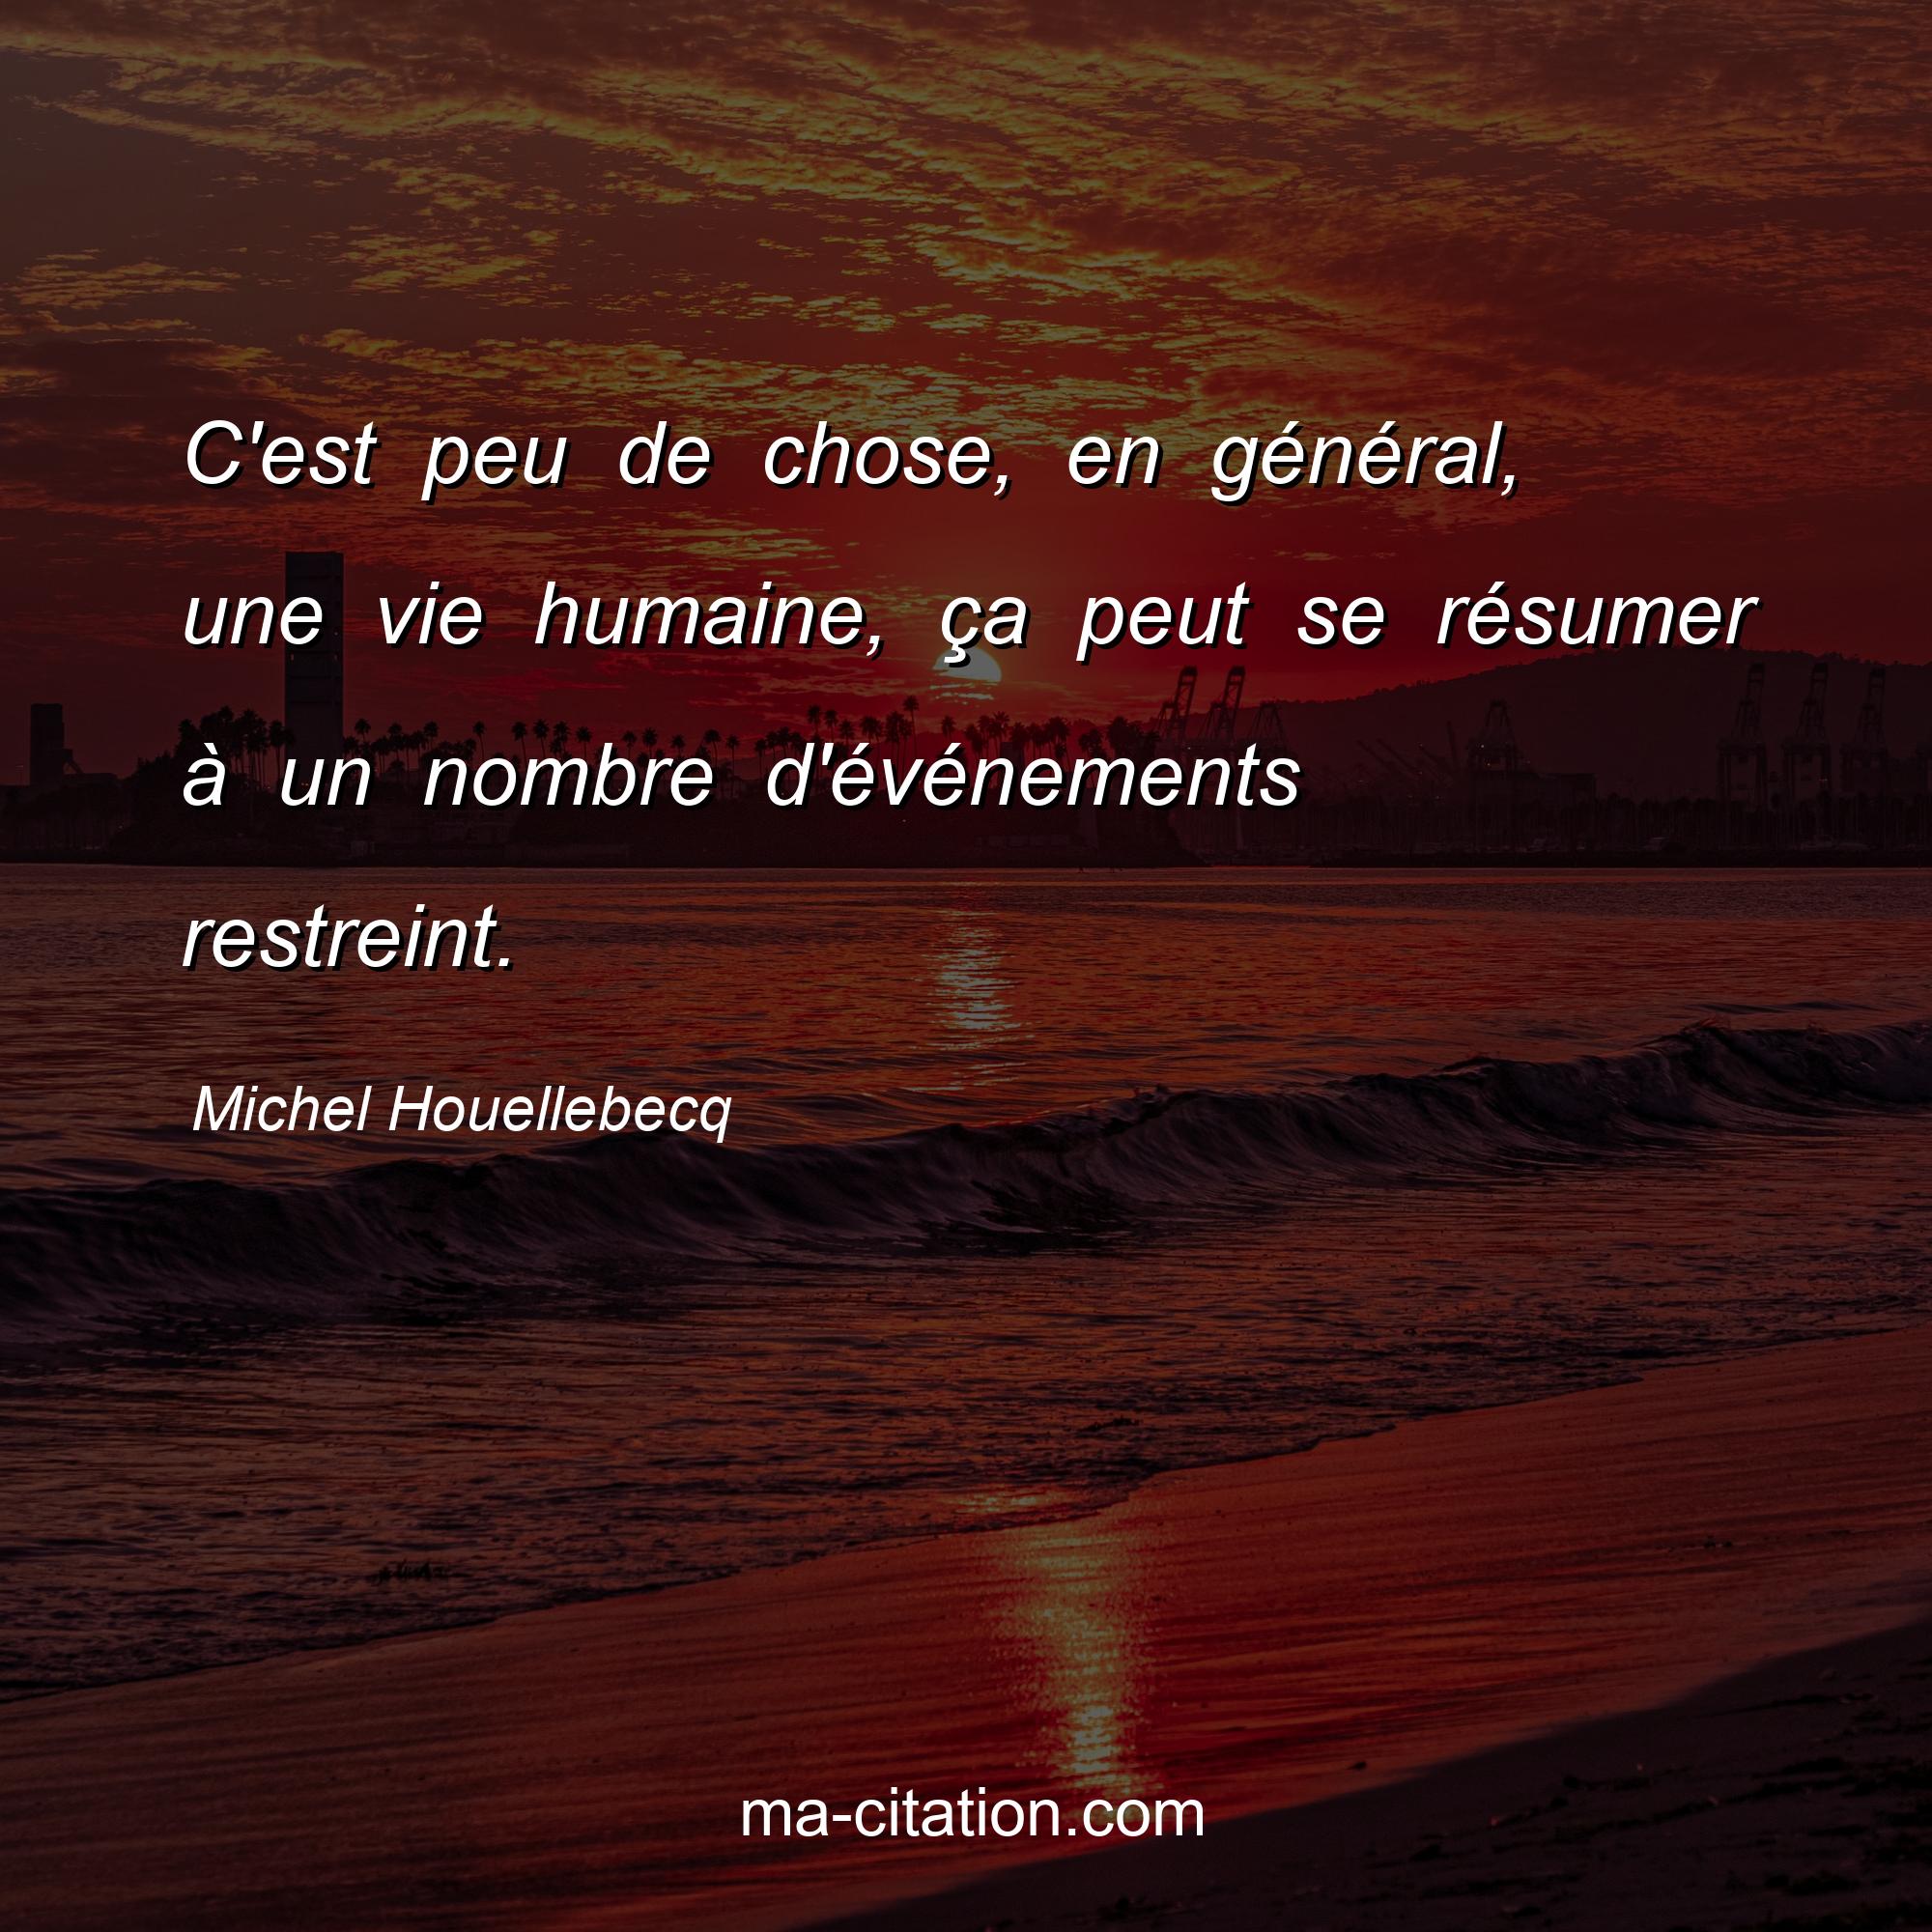 Michel Houellebecq : C'est peu de chose, en général, une vie humaine, ça peut se résumer à un nombre d'événements restreint.